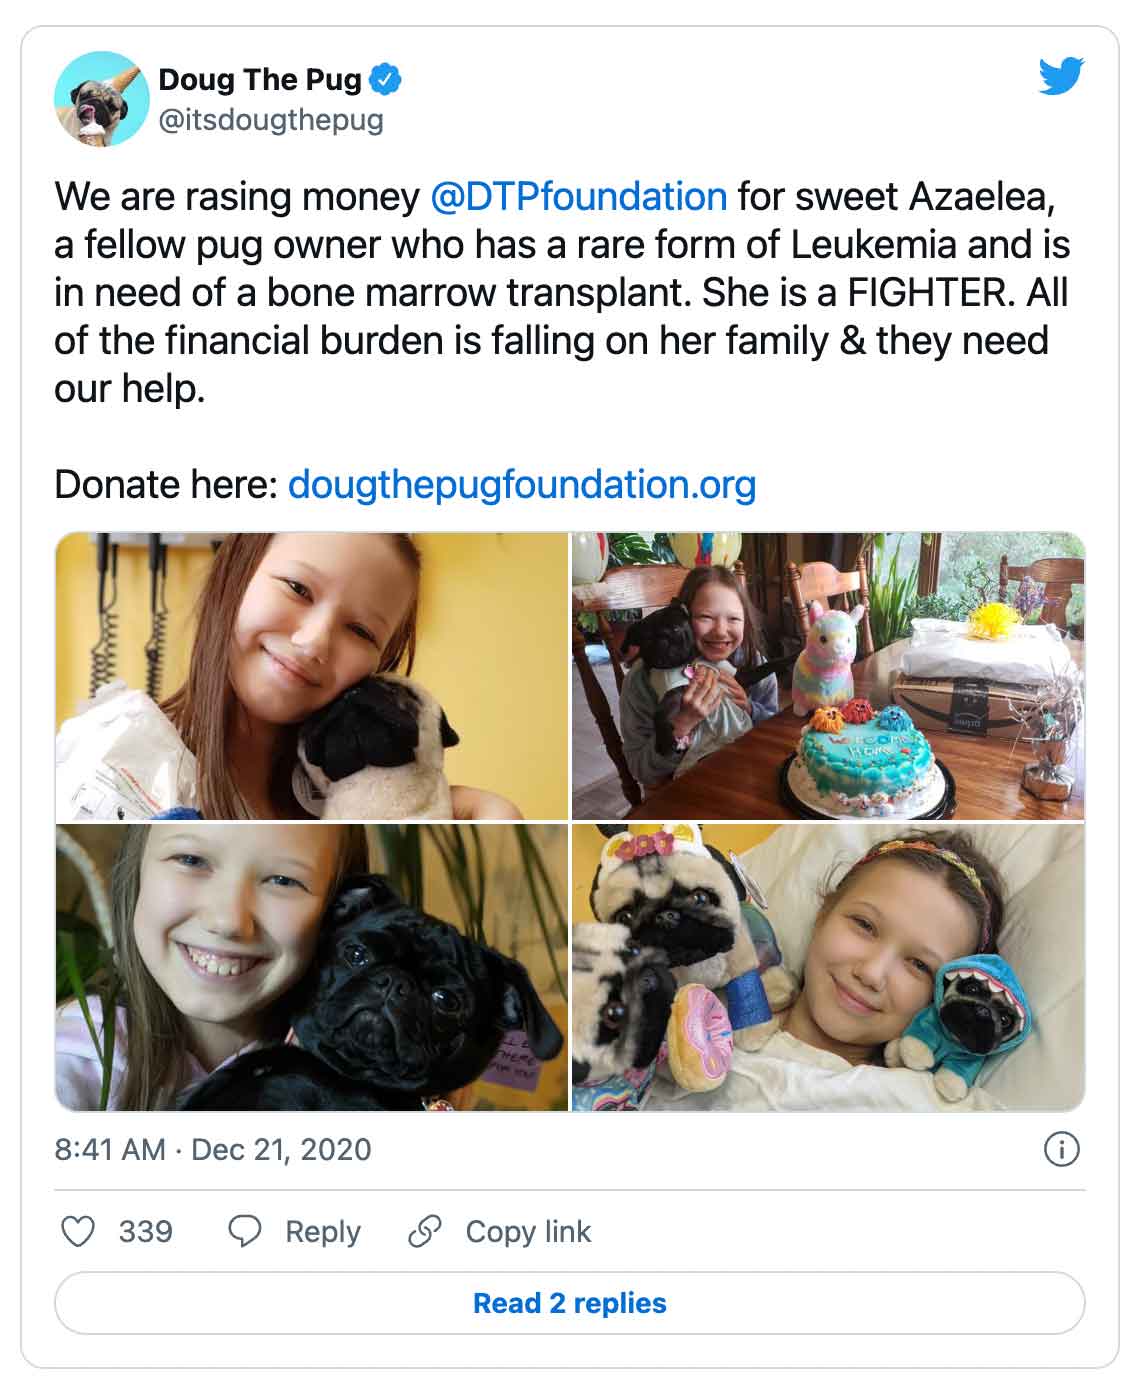 Tweet: Doug The Pug @itsdougthepug We razen geld @DTPfoundation voor zoete Azaelea, een mede-mopshondeigenaar die een zeldzame vorm van leukemie heeft en een beenmergtransplantatie nodig heeft. Ze is een VECHTER. Alle financiële lasten vallen op haar familie en ze hebben onze hulp nodig.  Doneer hier: http://dougthepugfoundation.org